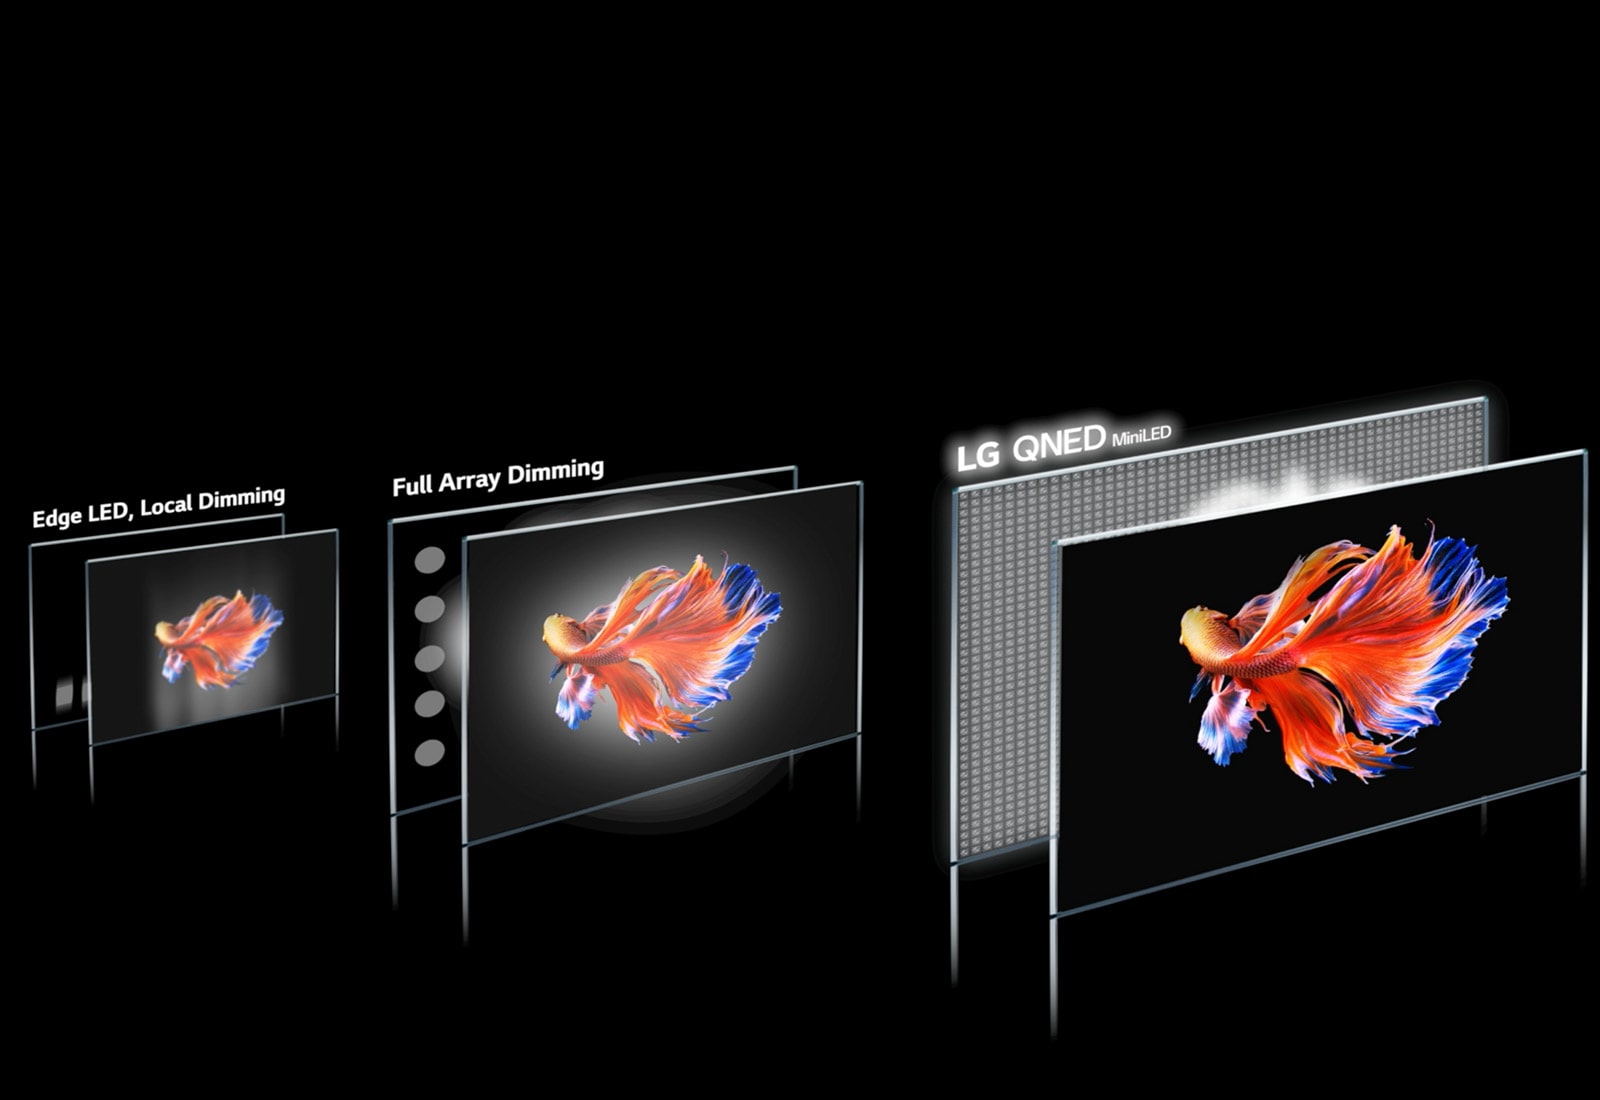 A fényerő-szabályozási zónás technológia képe és egy sziámi harcoshal fekete háttér előtt 3 különböző kijelzőn. Az LG QNED MiniLED a legtisztább képet adja a legkevesebb holdudvarhatással és élénkebb színekkel (videó megtekintése).